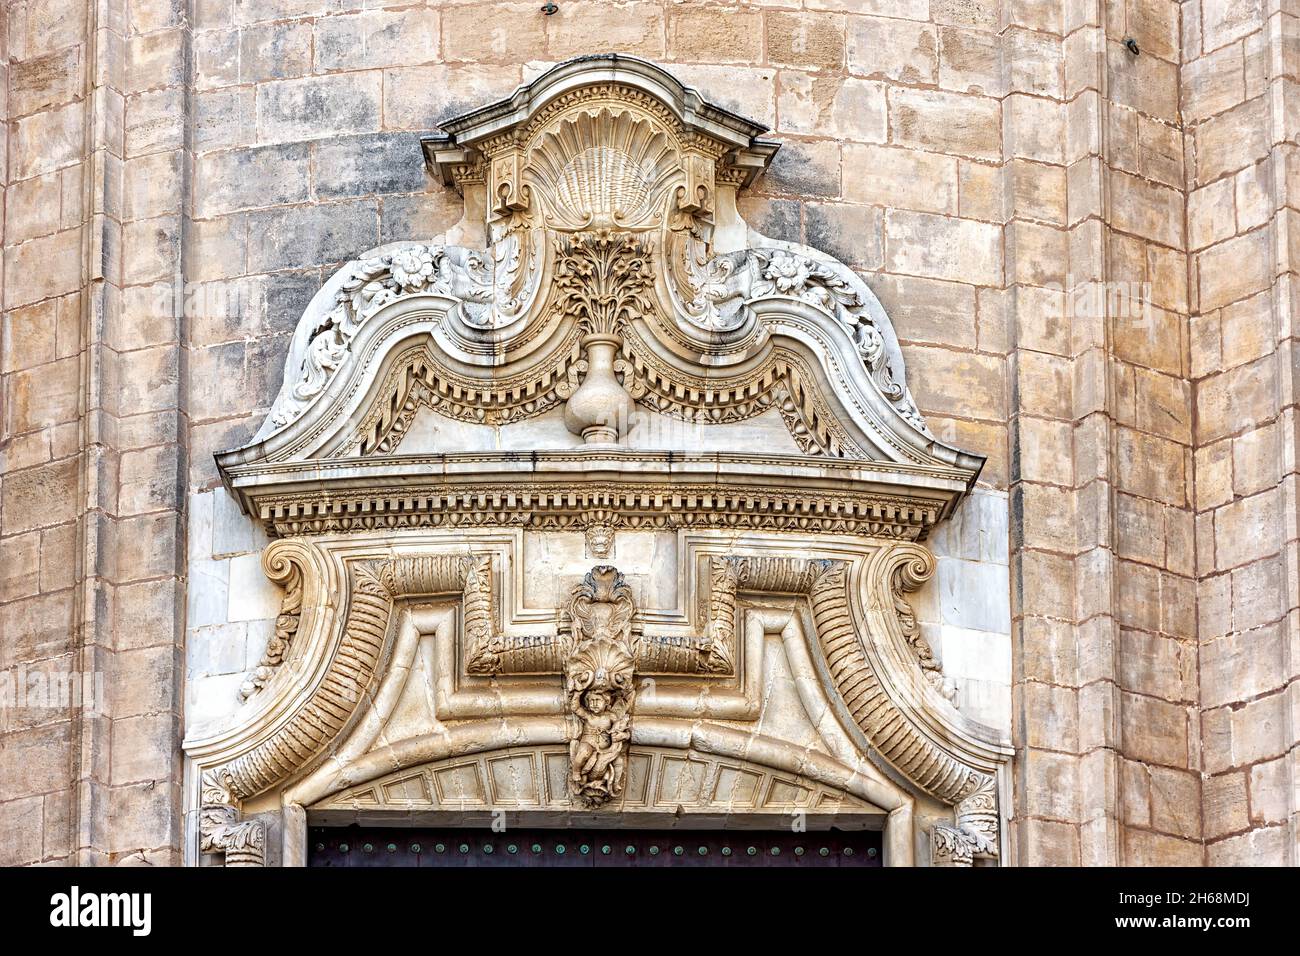 Detalle puerta en la fachada principal de la Catedral de la Santa Cruz sobre el mar en Cádiz, España Stock Photo